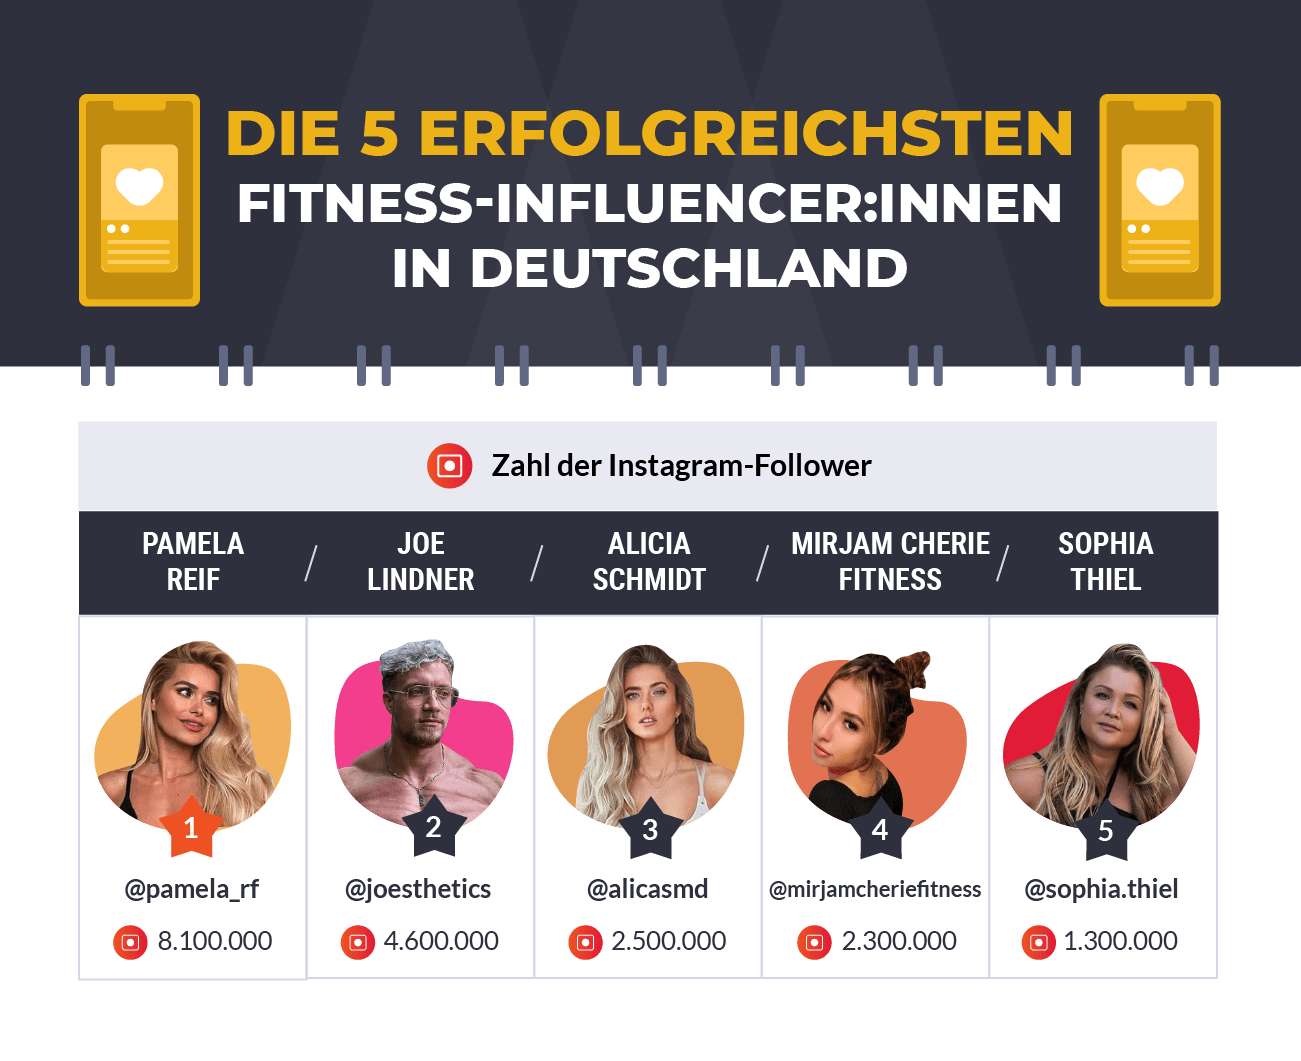 Die 5 erfolgreichsten fitness-influencer innen in Deutschland